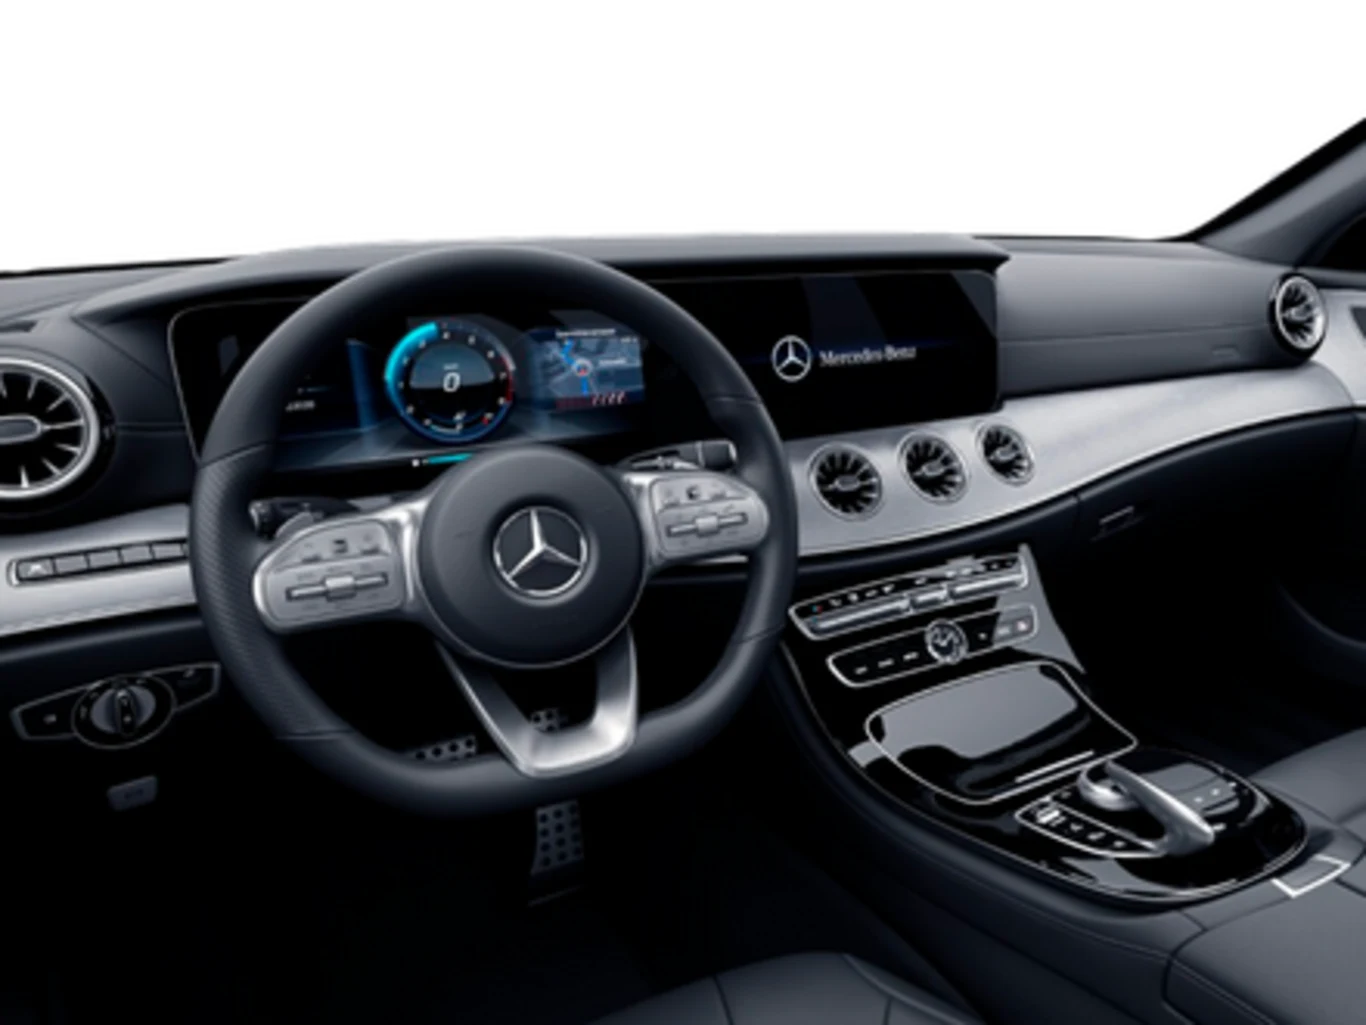 Mercedes-Benz CLS 450 3.0 I6 GASOLINA 4MATIC 9G-TRONIC